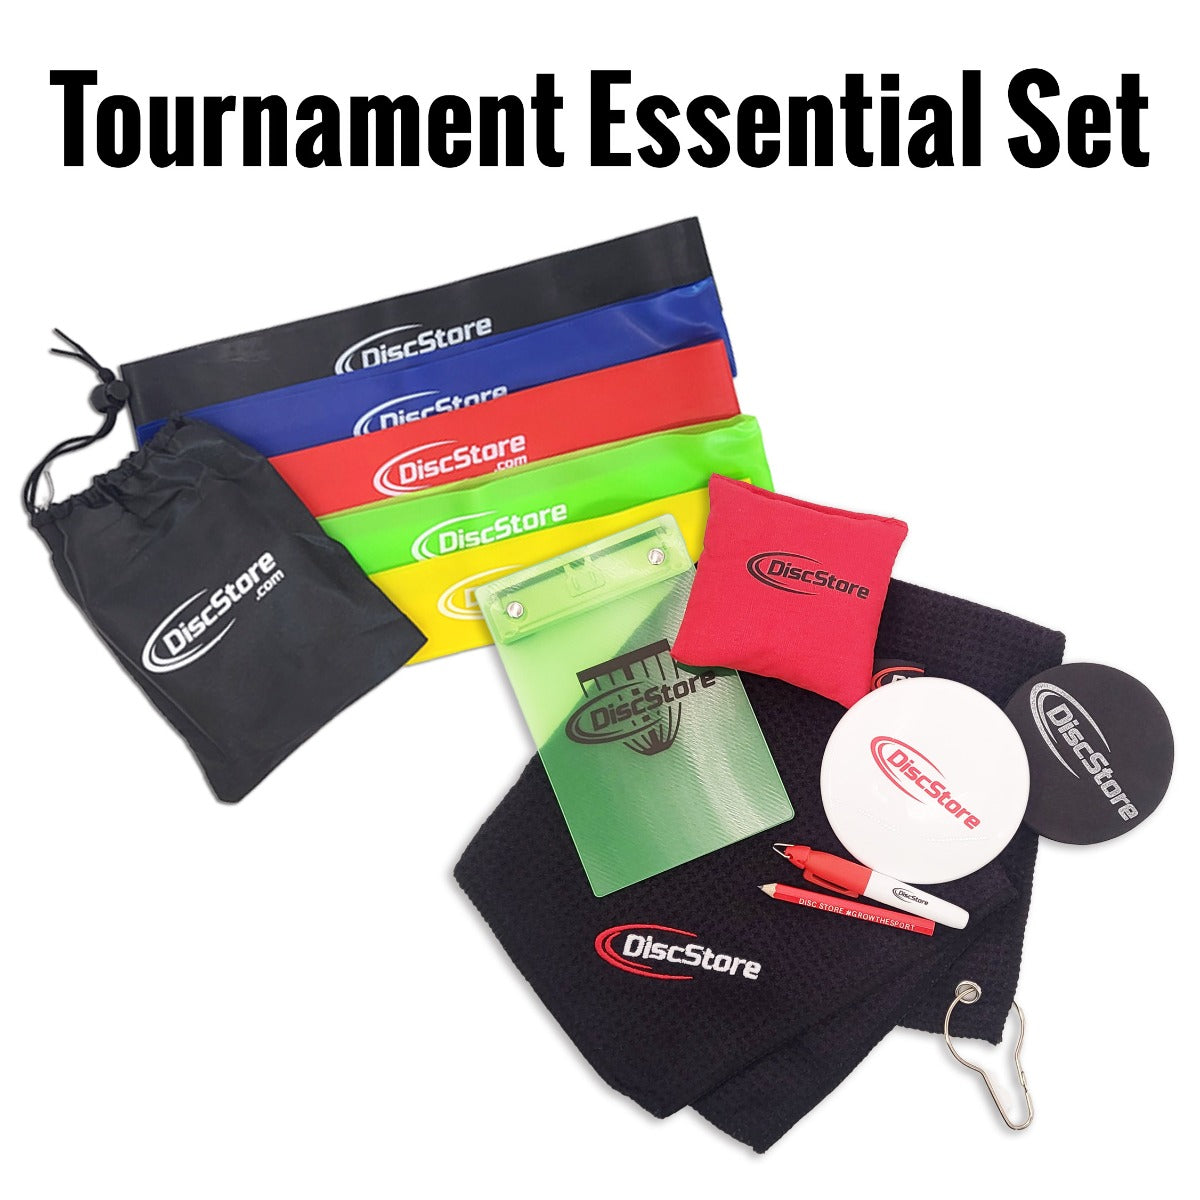 Tournament Essential Set